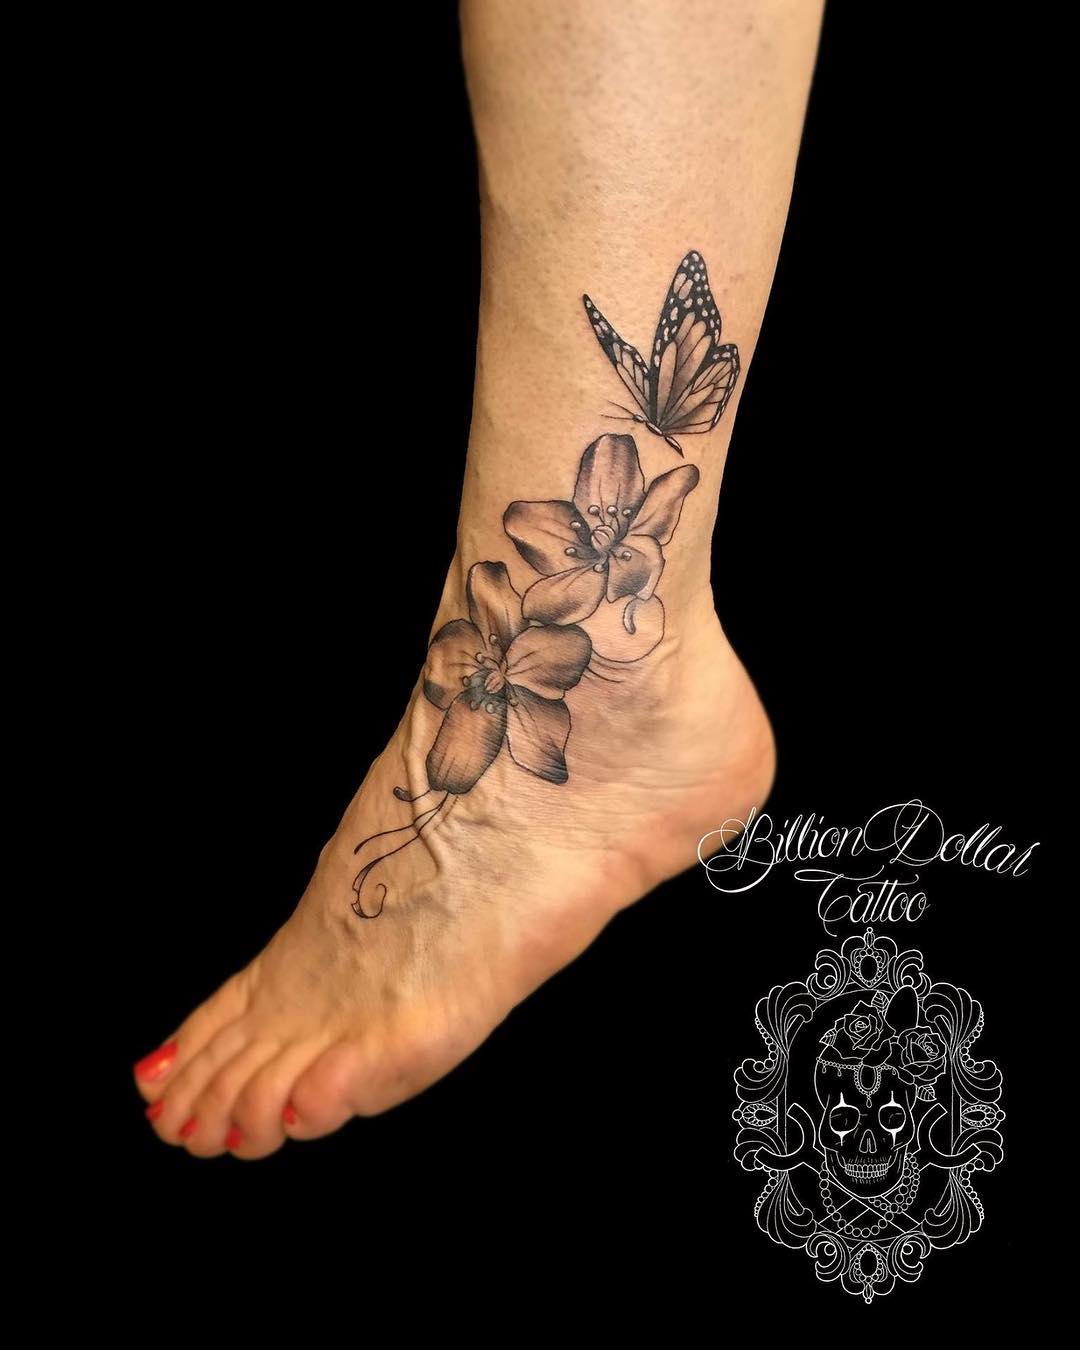 tatuaggio piede fiori farfalle by @billiondollartattoo